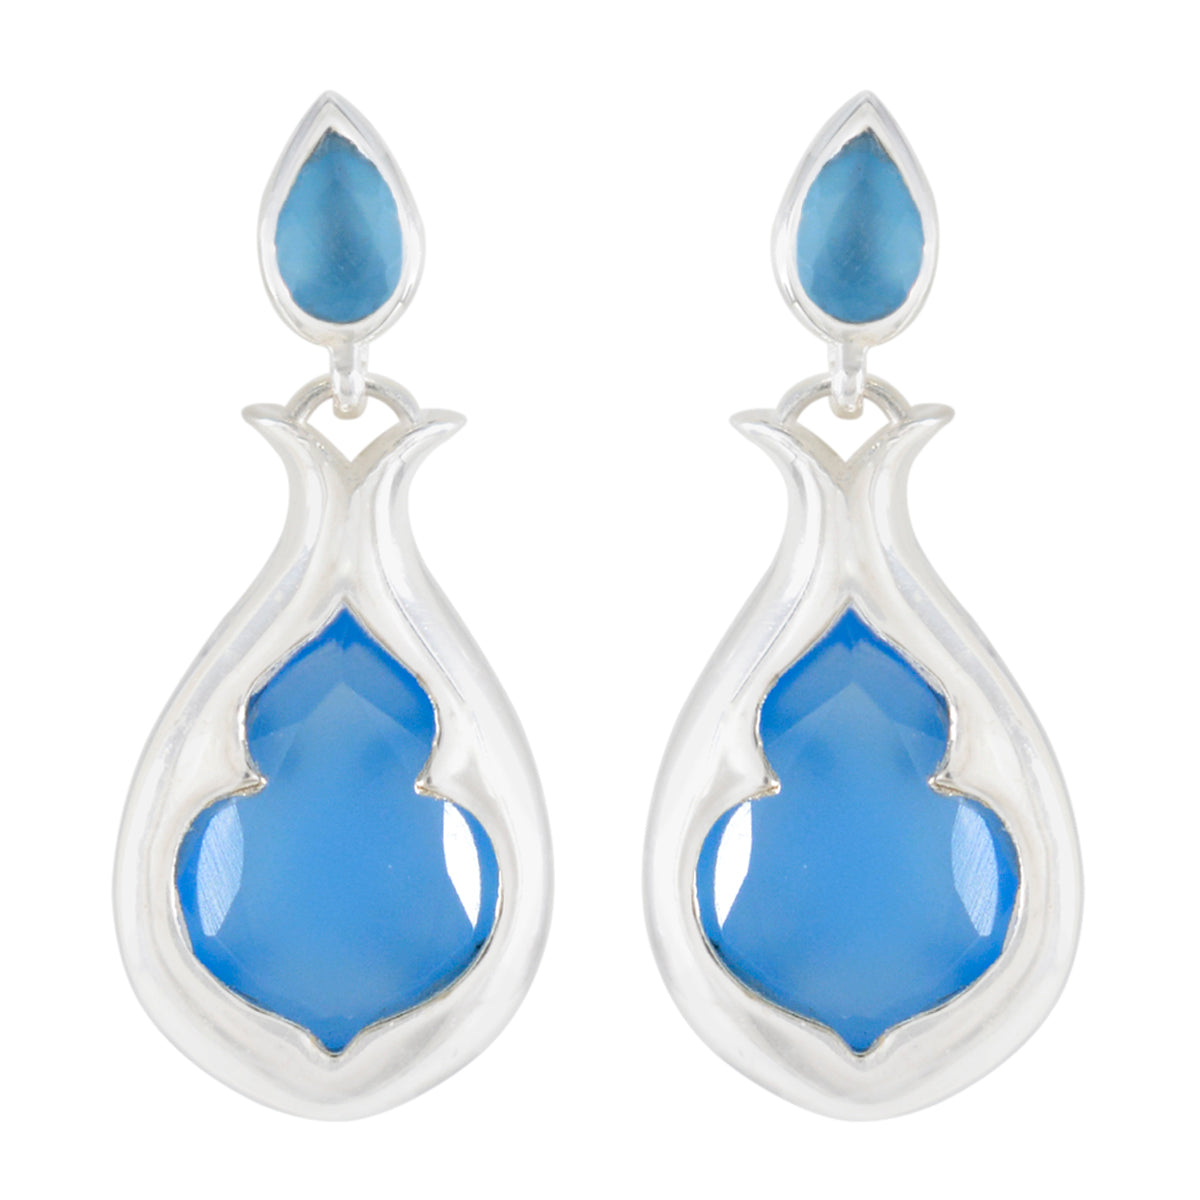 Riyo Drop-Dead Gorgeous Sterling Silver Earring For Demoiselle Blue Chalcedony Earring Bezel Setting Blue Earring Stud Earring